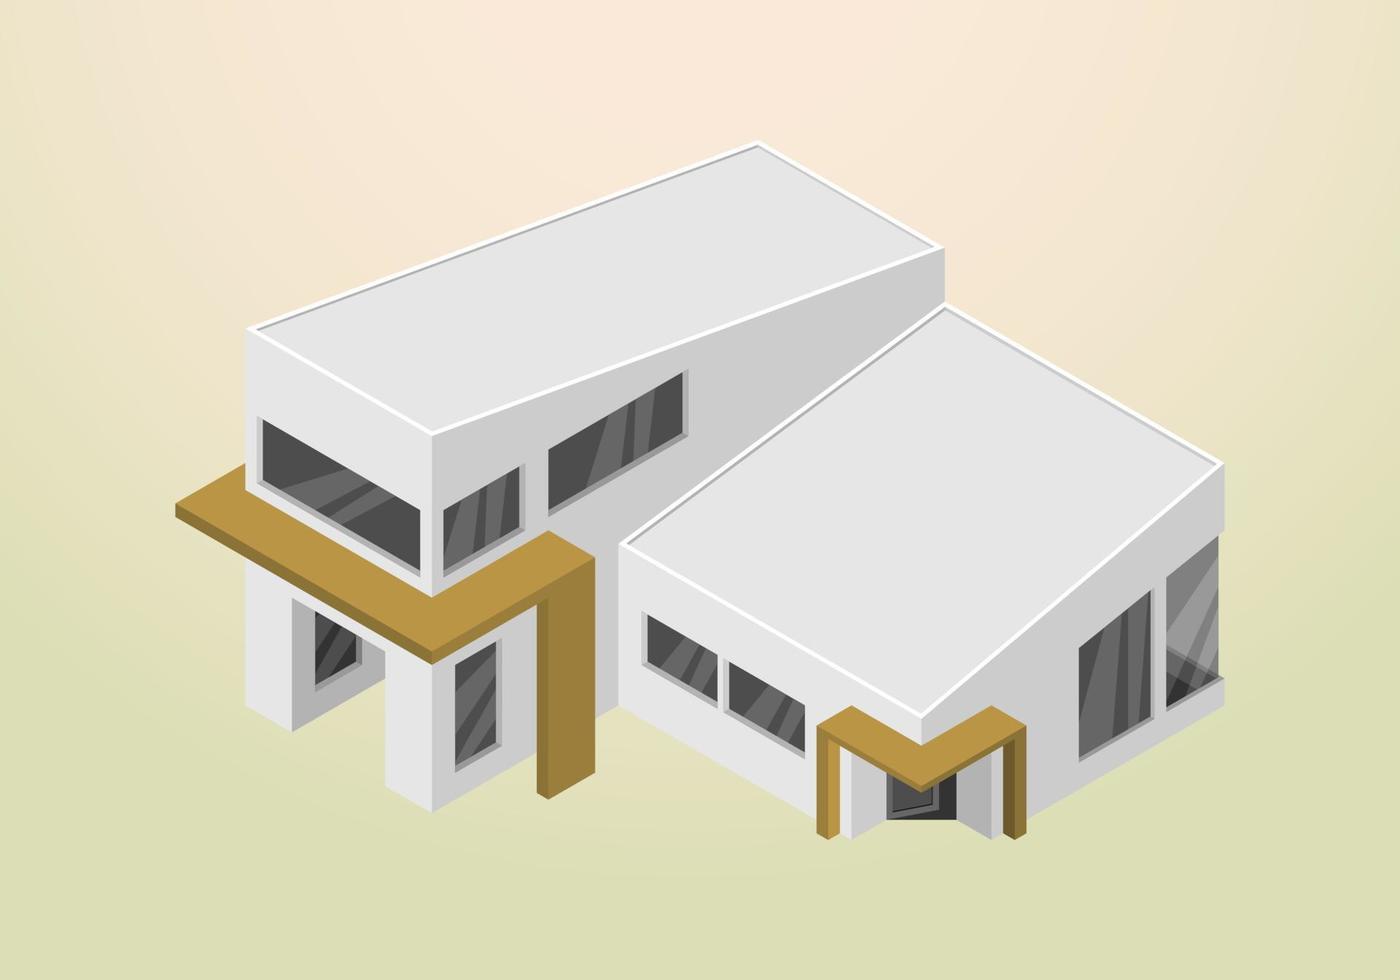 isometrisches Design der modernen und minimalistischen Hausvektorvorlage vektor